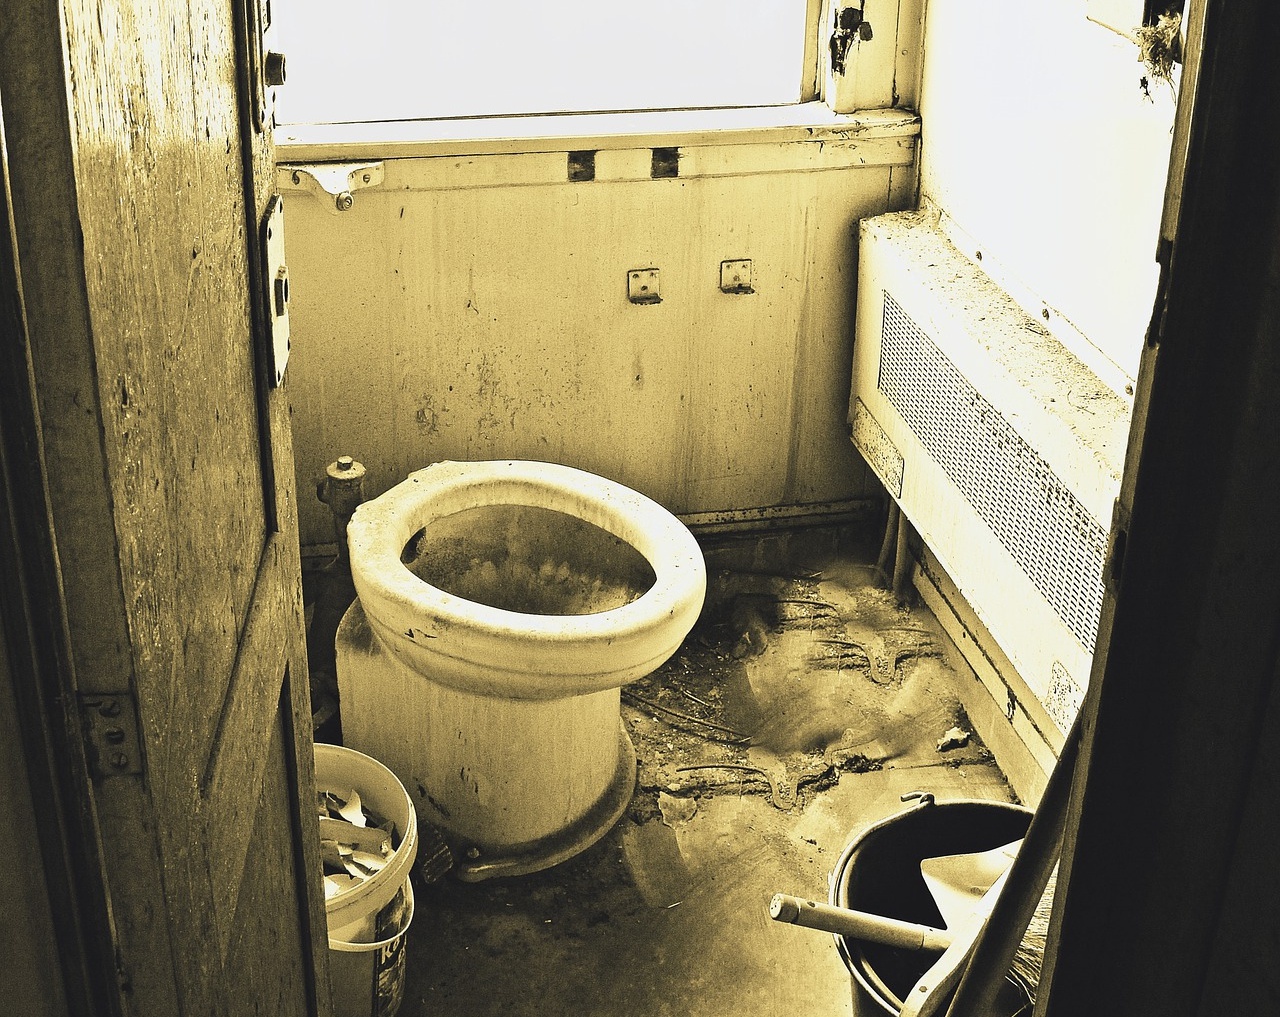 Kein Schmerzensgeld für funktionsuntüchtige Toilette in der Regionalbahn